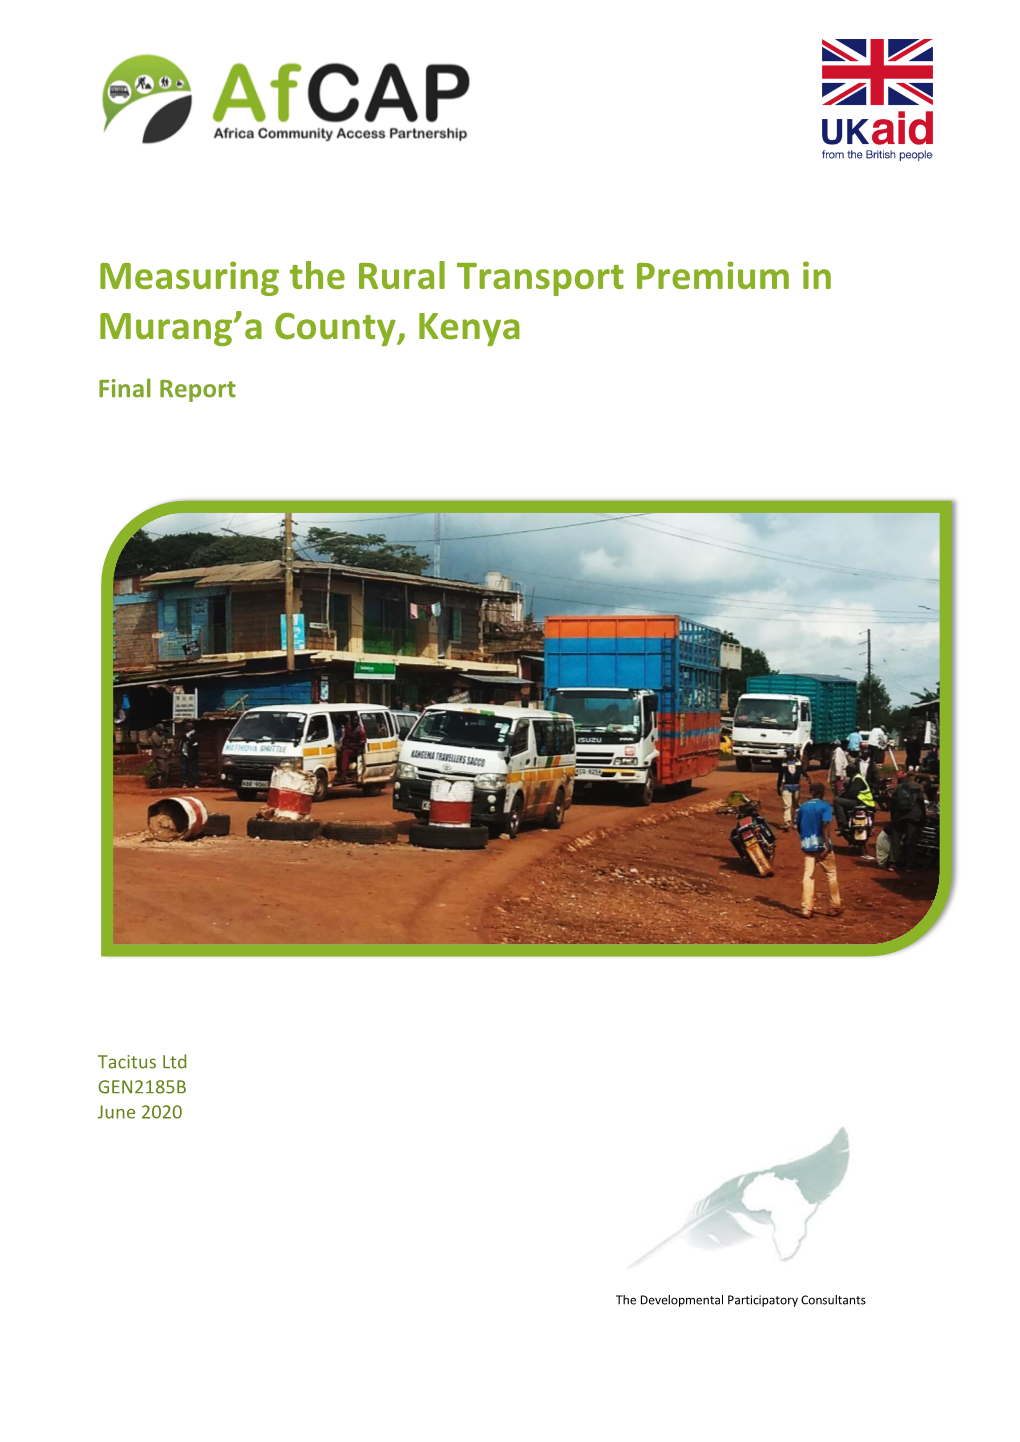 Measuring the Rural Transport Premium in Murang'a County, Kenya